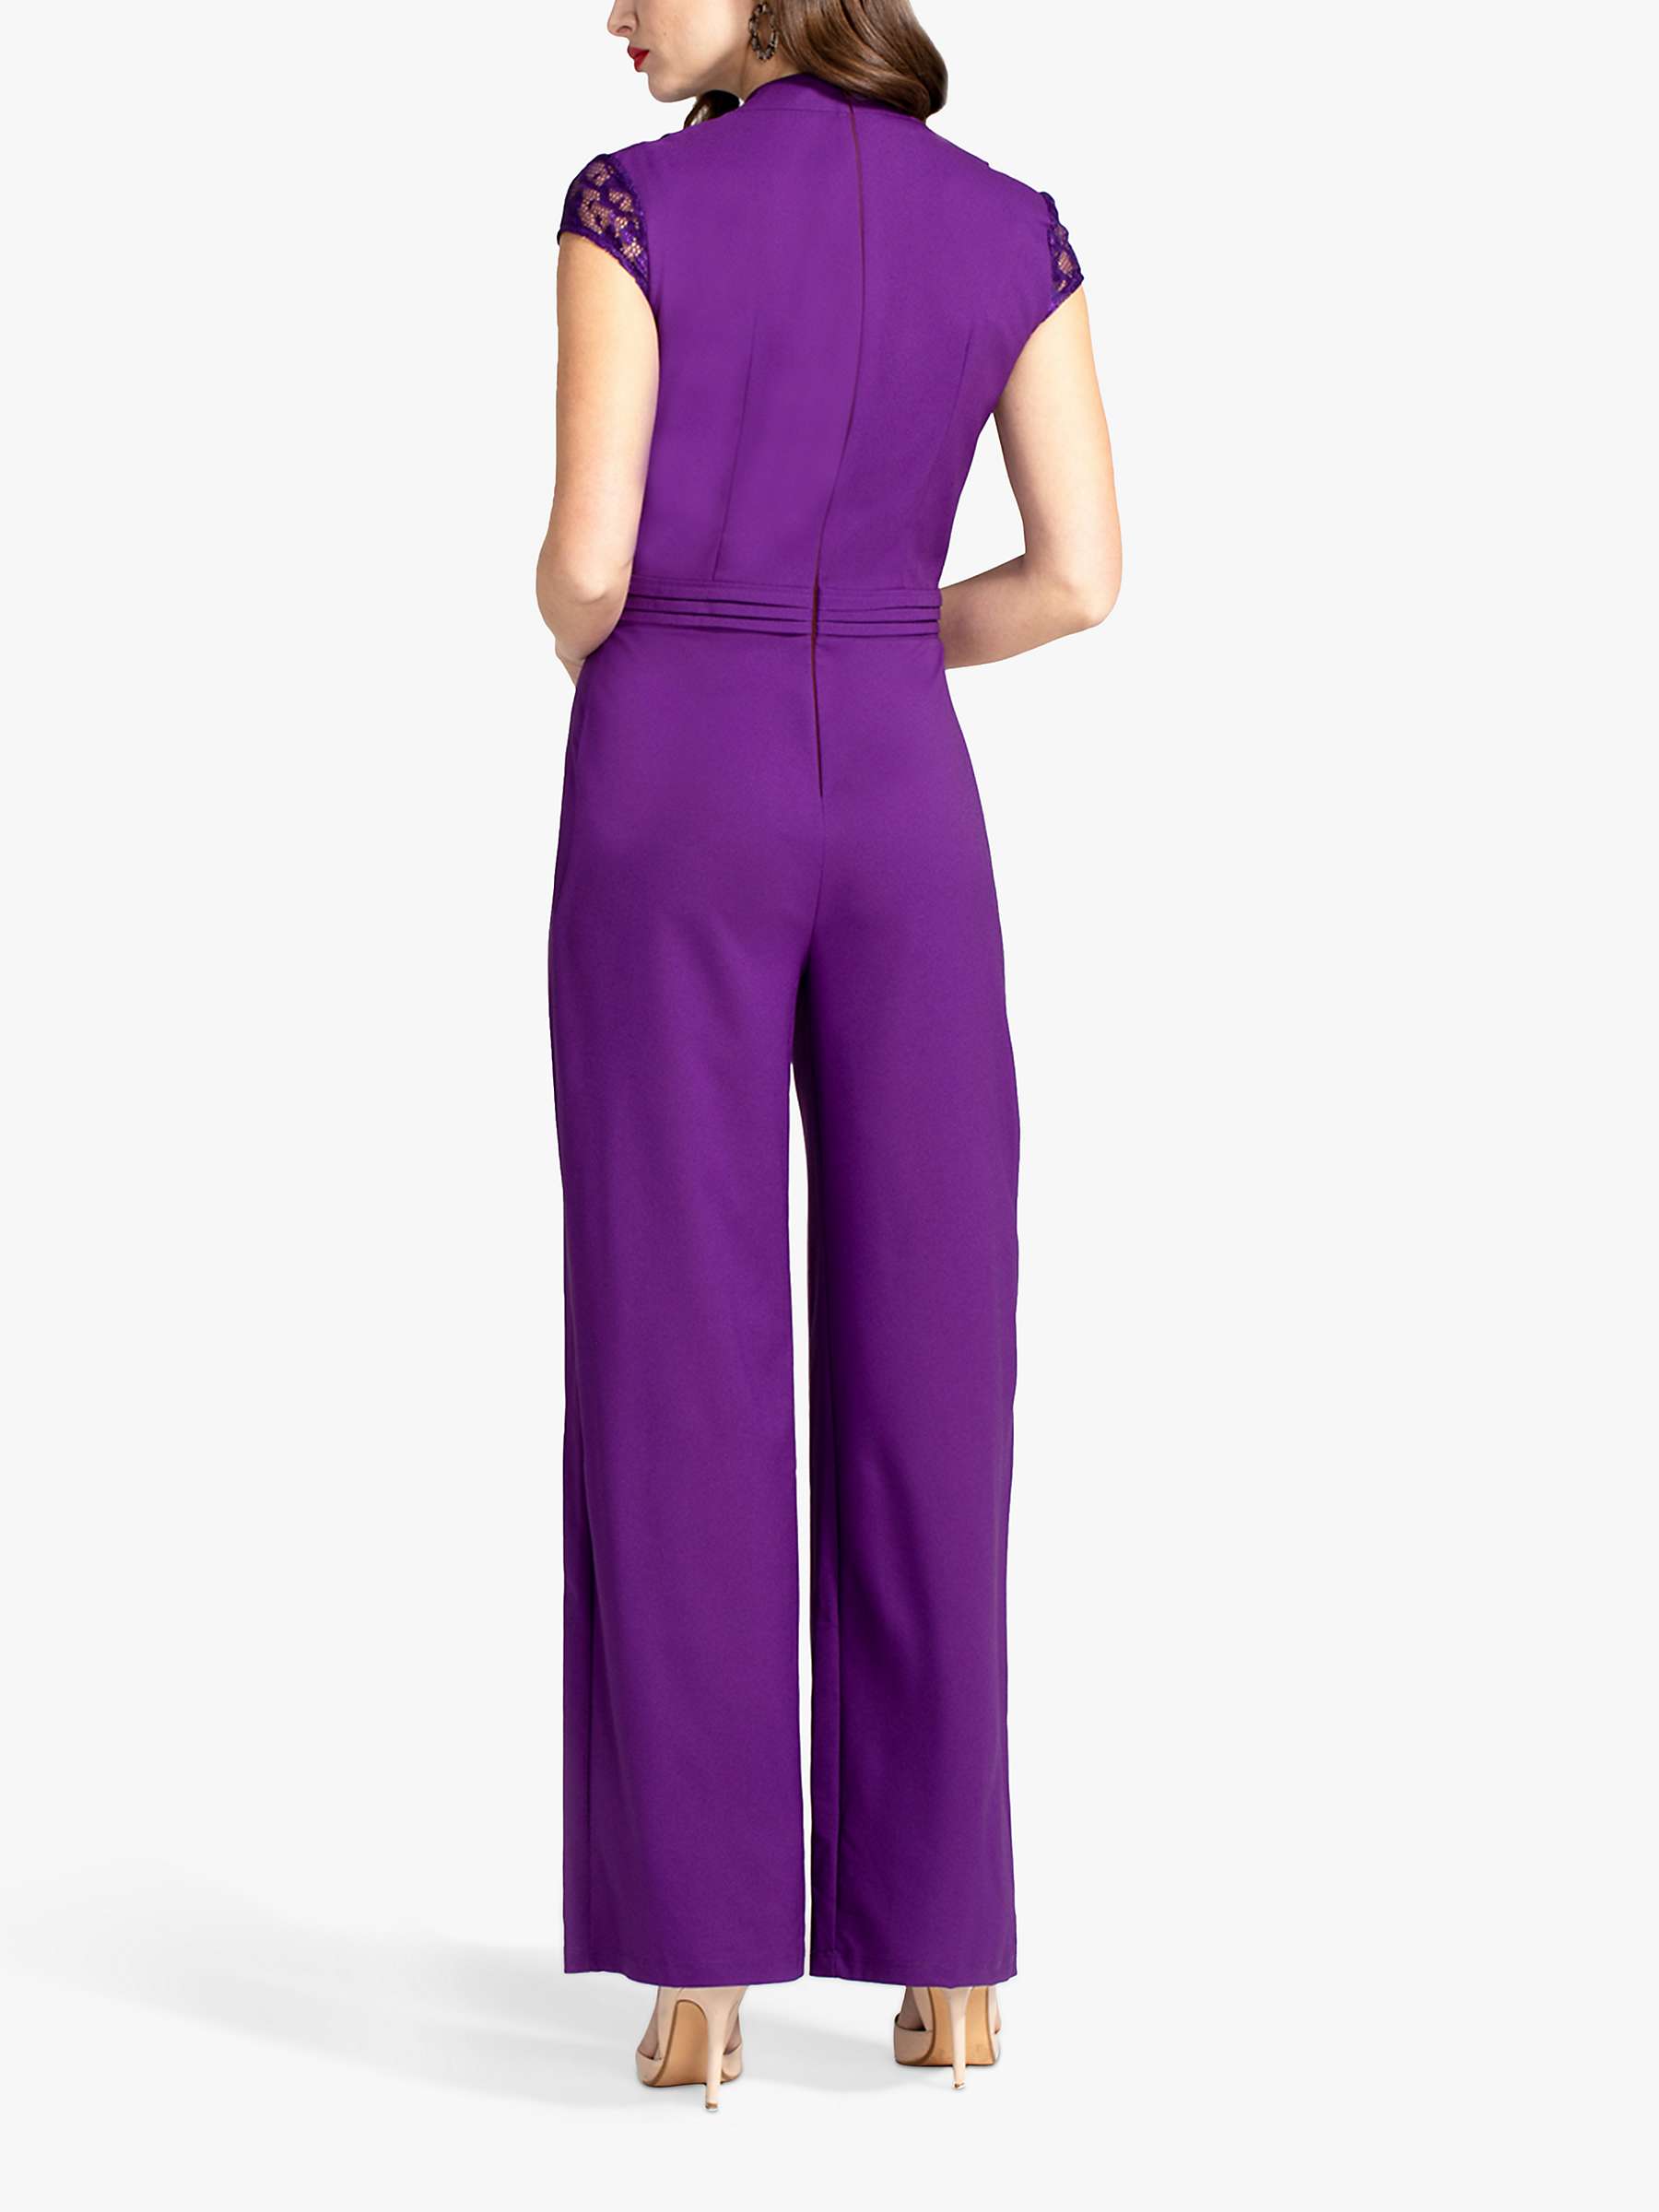 HotSquash Lace Detail Crepe Jumpsuit, Purple at John Lewis & Partners